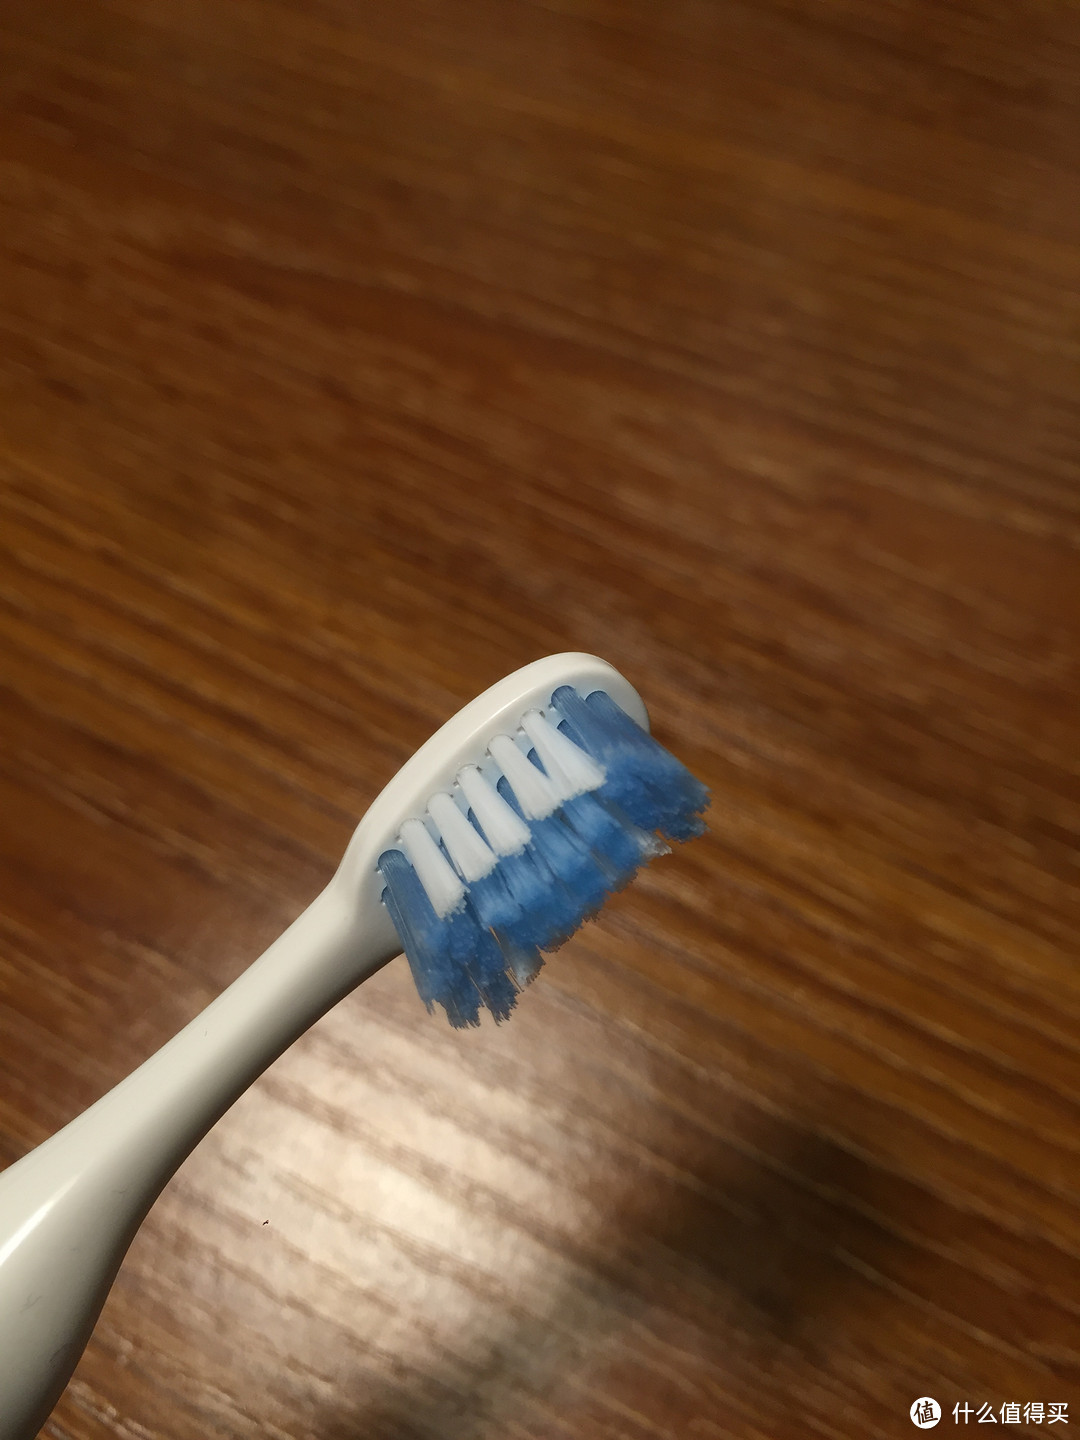 刷牙智能小助手——OraCleen S 智能便携牙刷使用评测